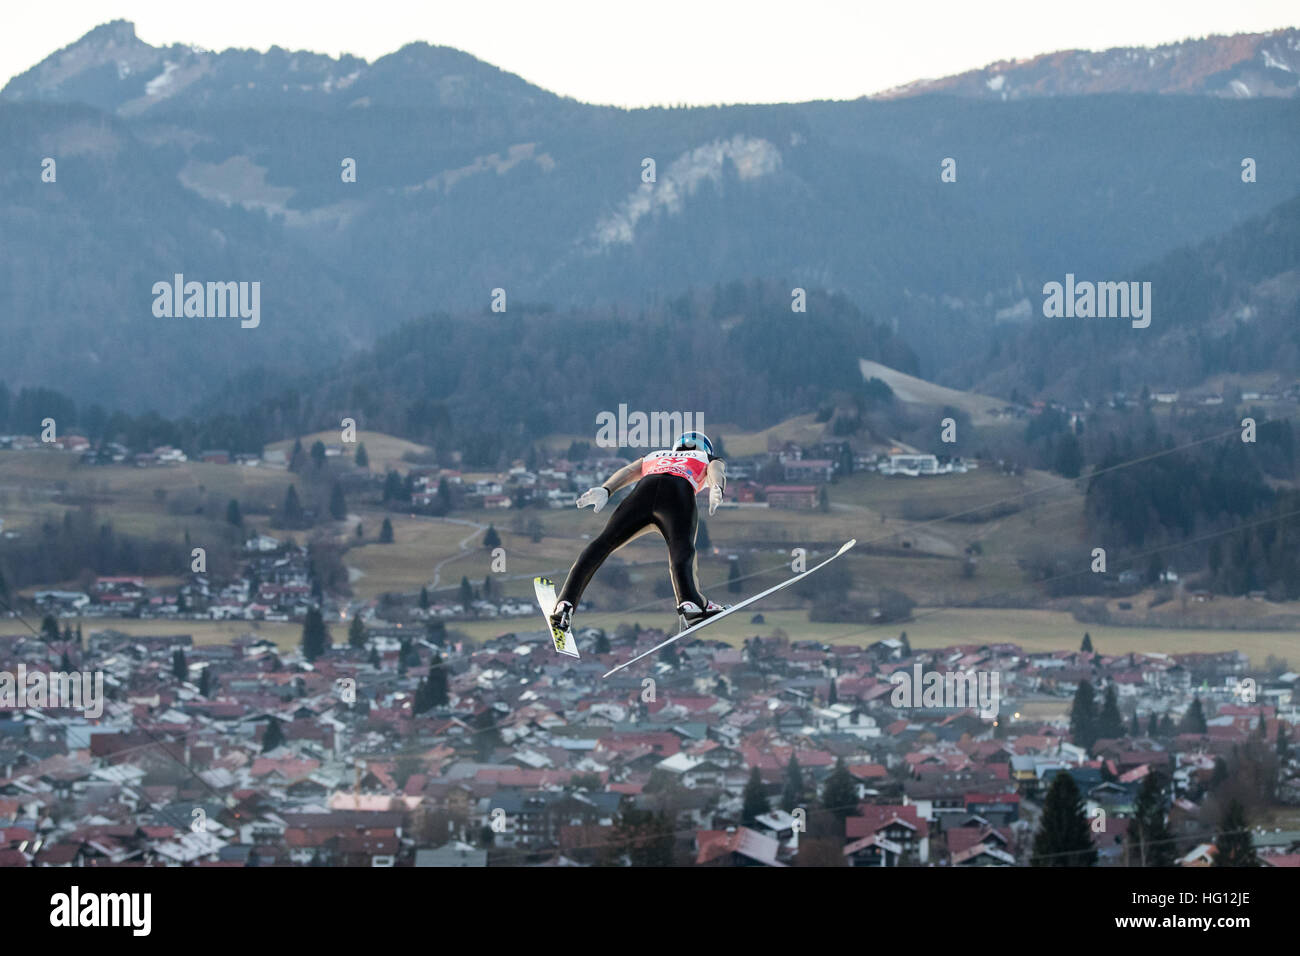 29.12.2017. Oberstdorf, Alemania. Puente de esquí austriaco Michael Hayboeck en acción durante un salto en la práctica cuatro colinas Torneo en Oberstdorf, Alemania, el 29 de diciembre de 2016. Foto de stock